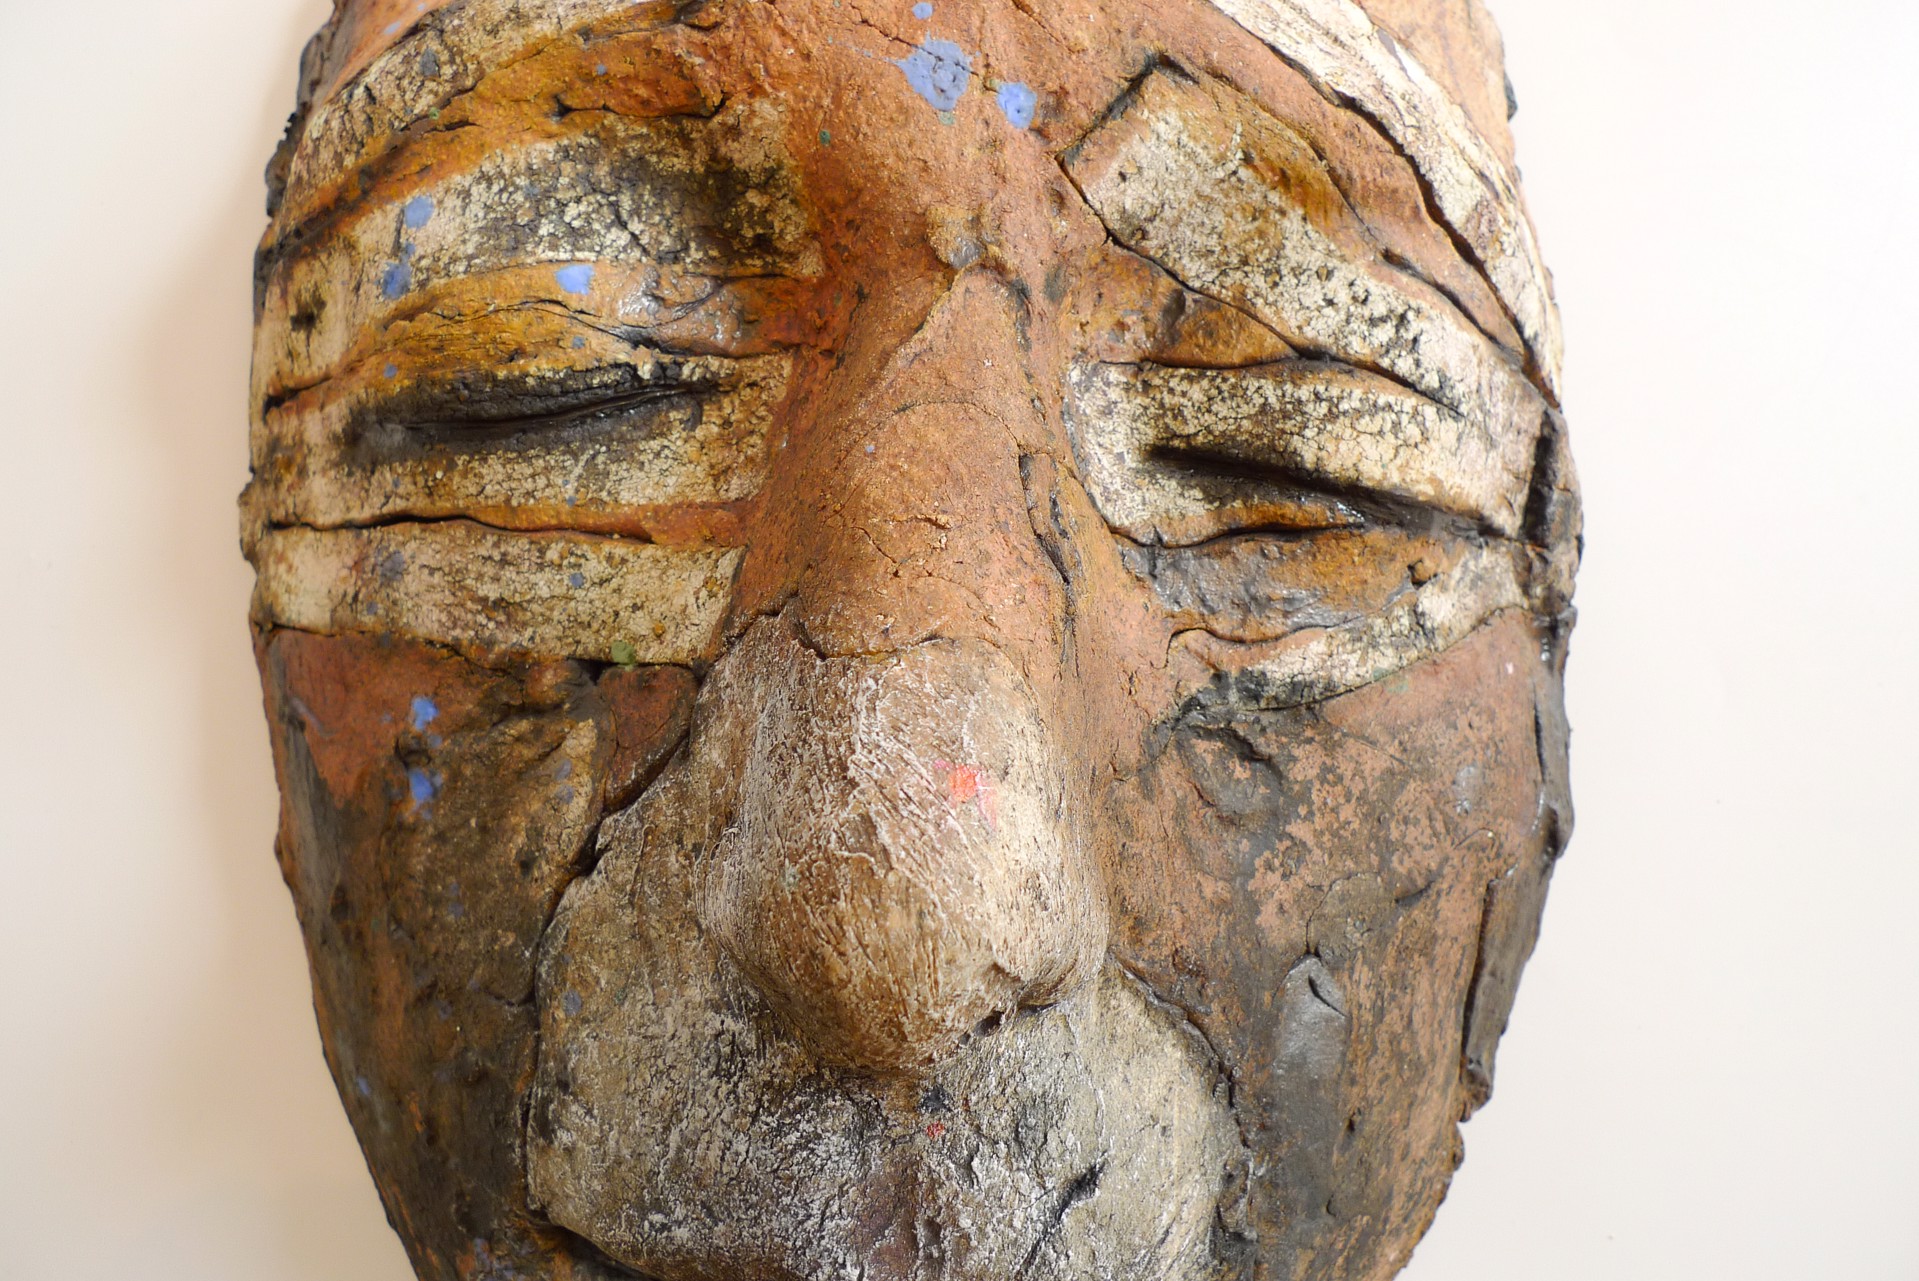 Large Mask by Marlene Miller